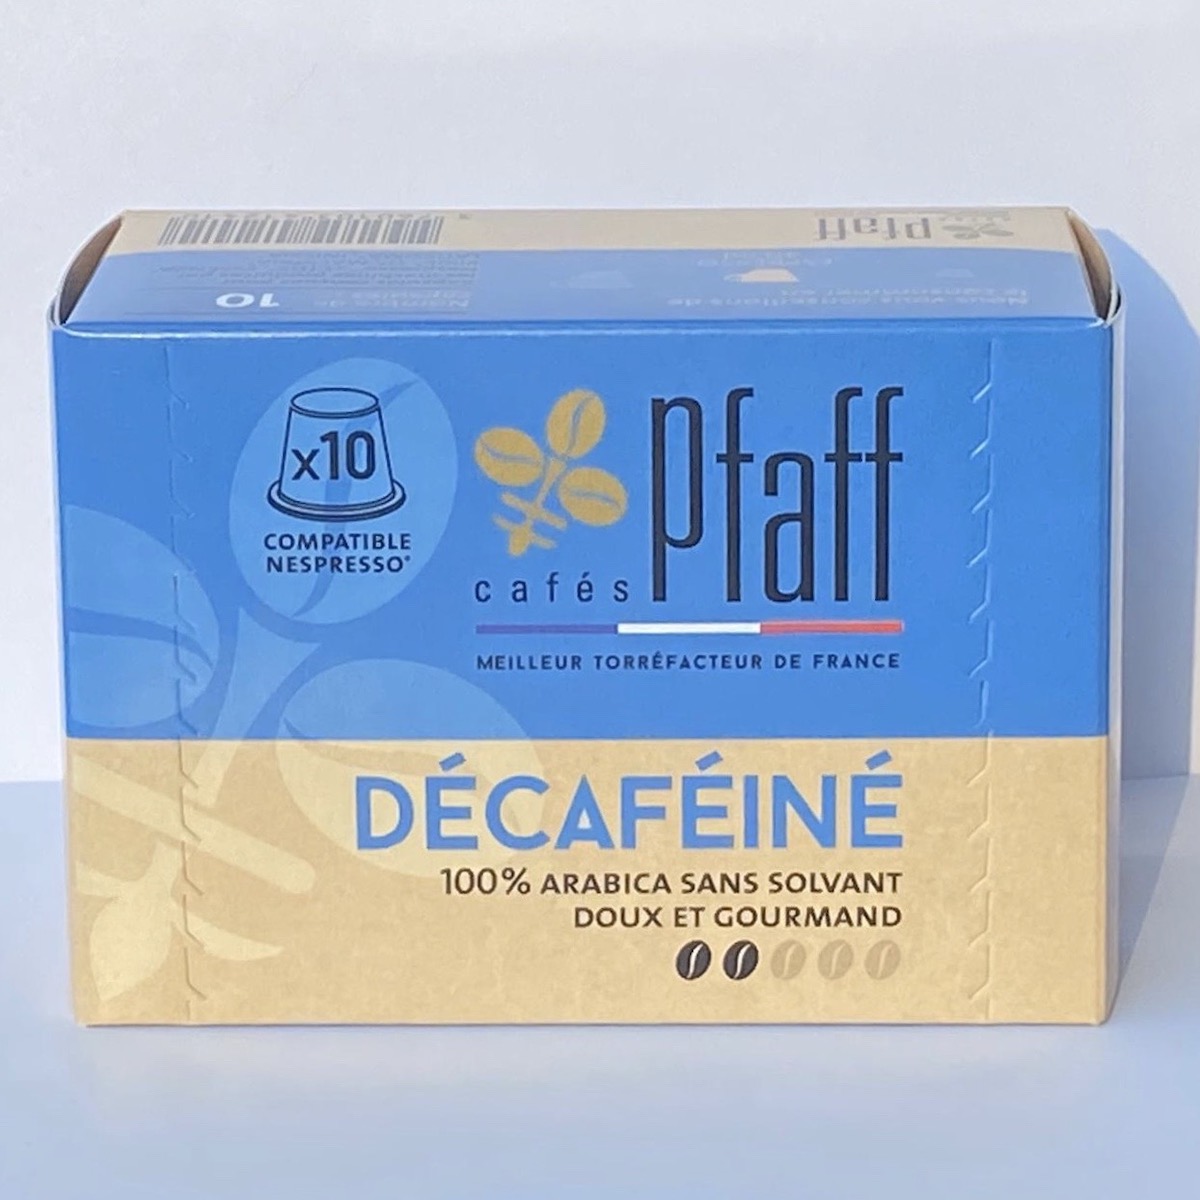 capsule café décaféiné sans solvant pur arabica du Mexique cafés Pfaff